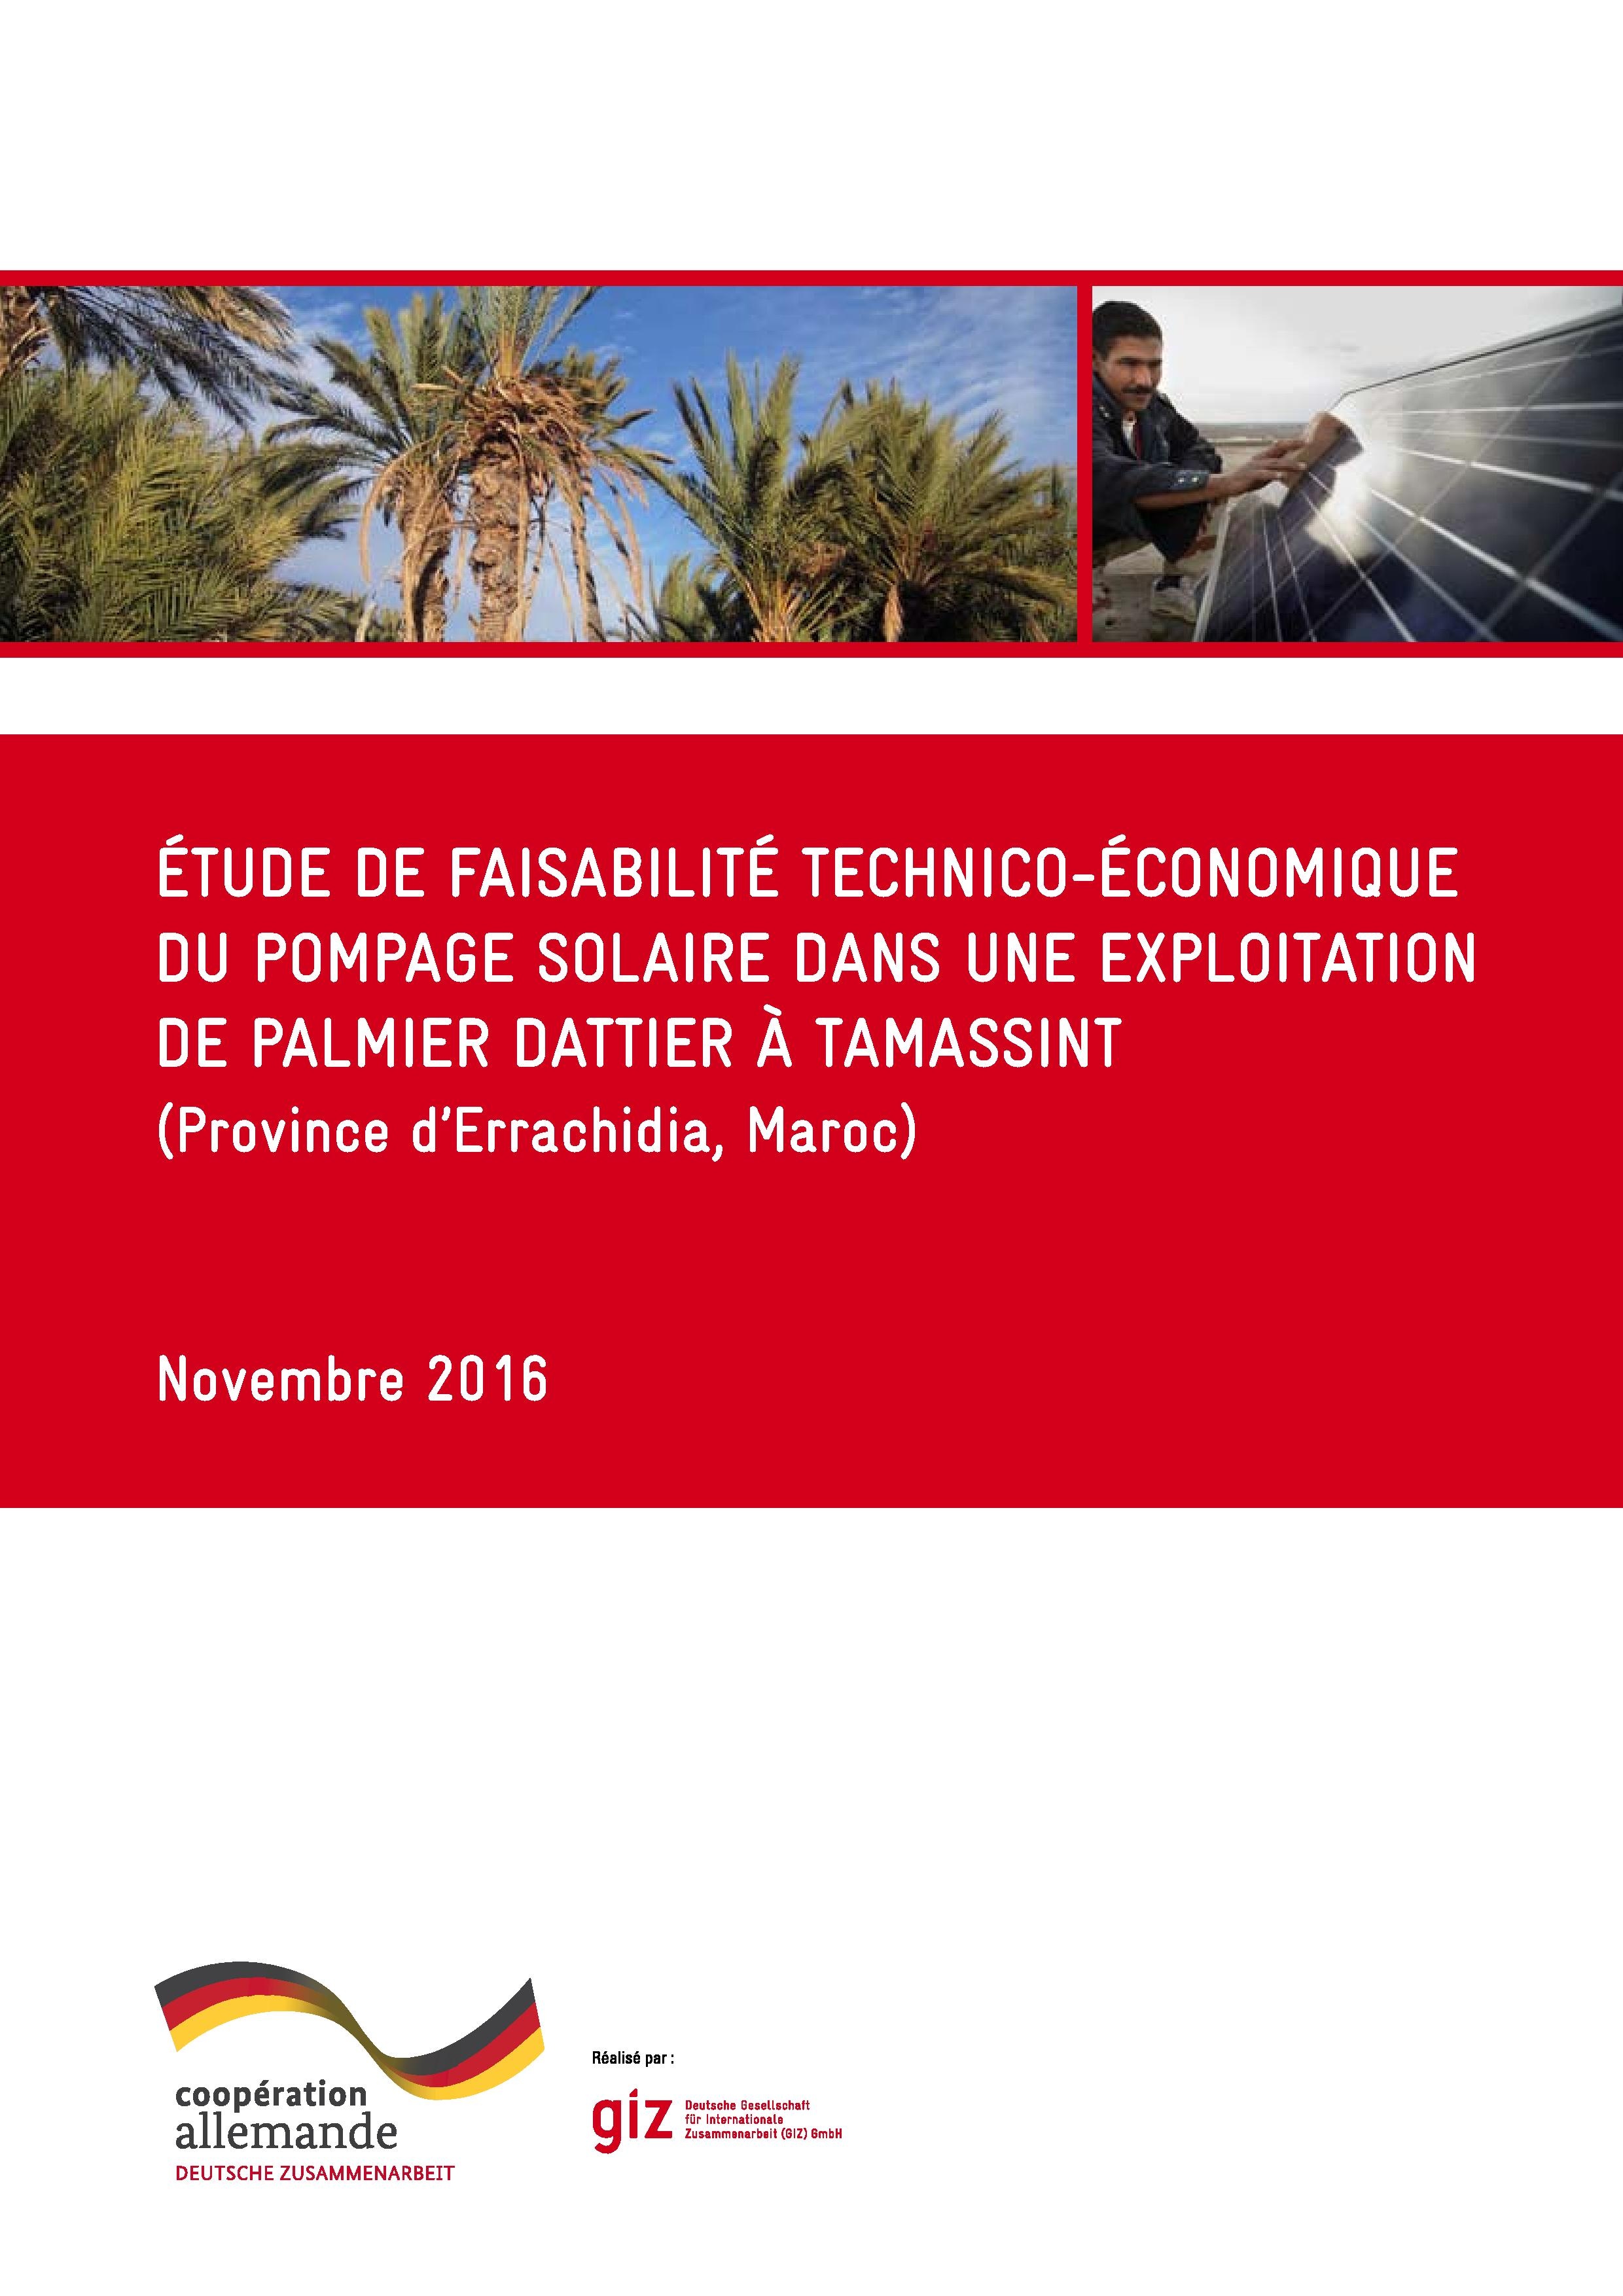 Editing Étude de faisabilité technico-économique du pompage solaire dans une exploitation de palmier dattier à Tamassint (Province d’Errachidia, Maroc)